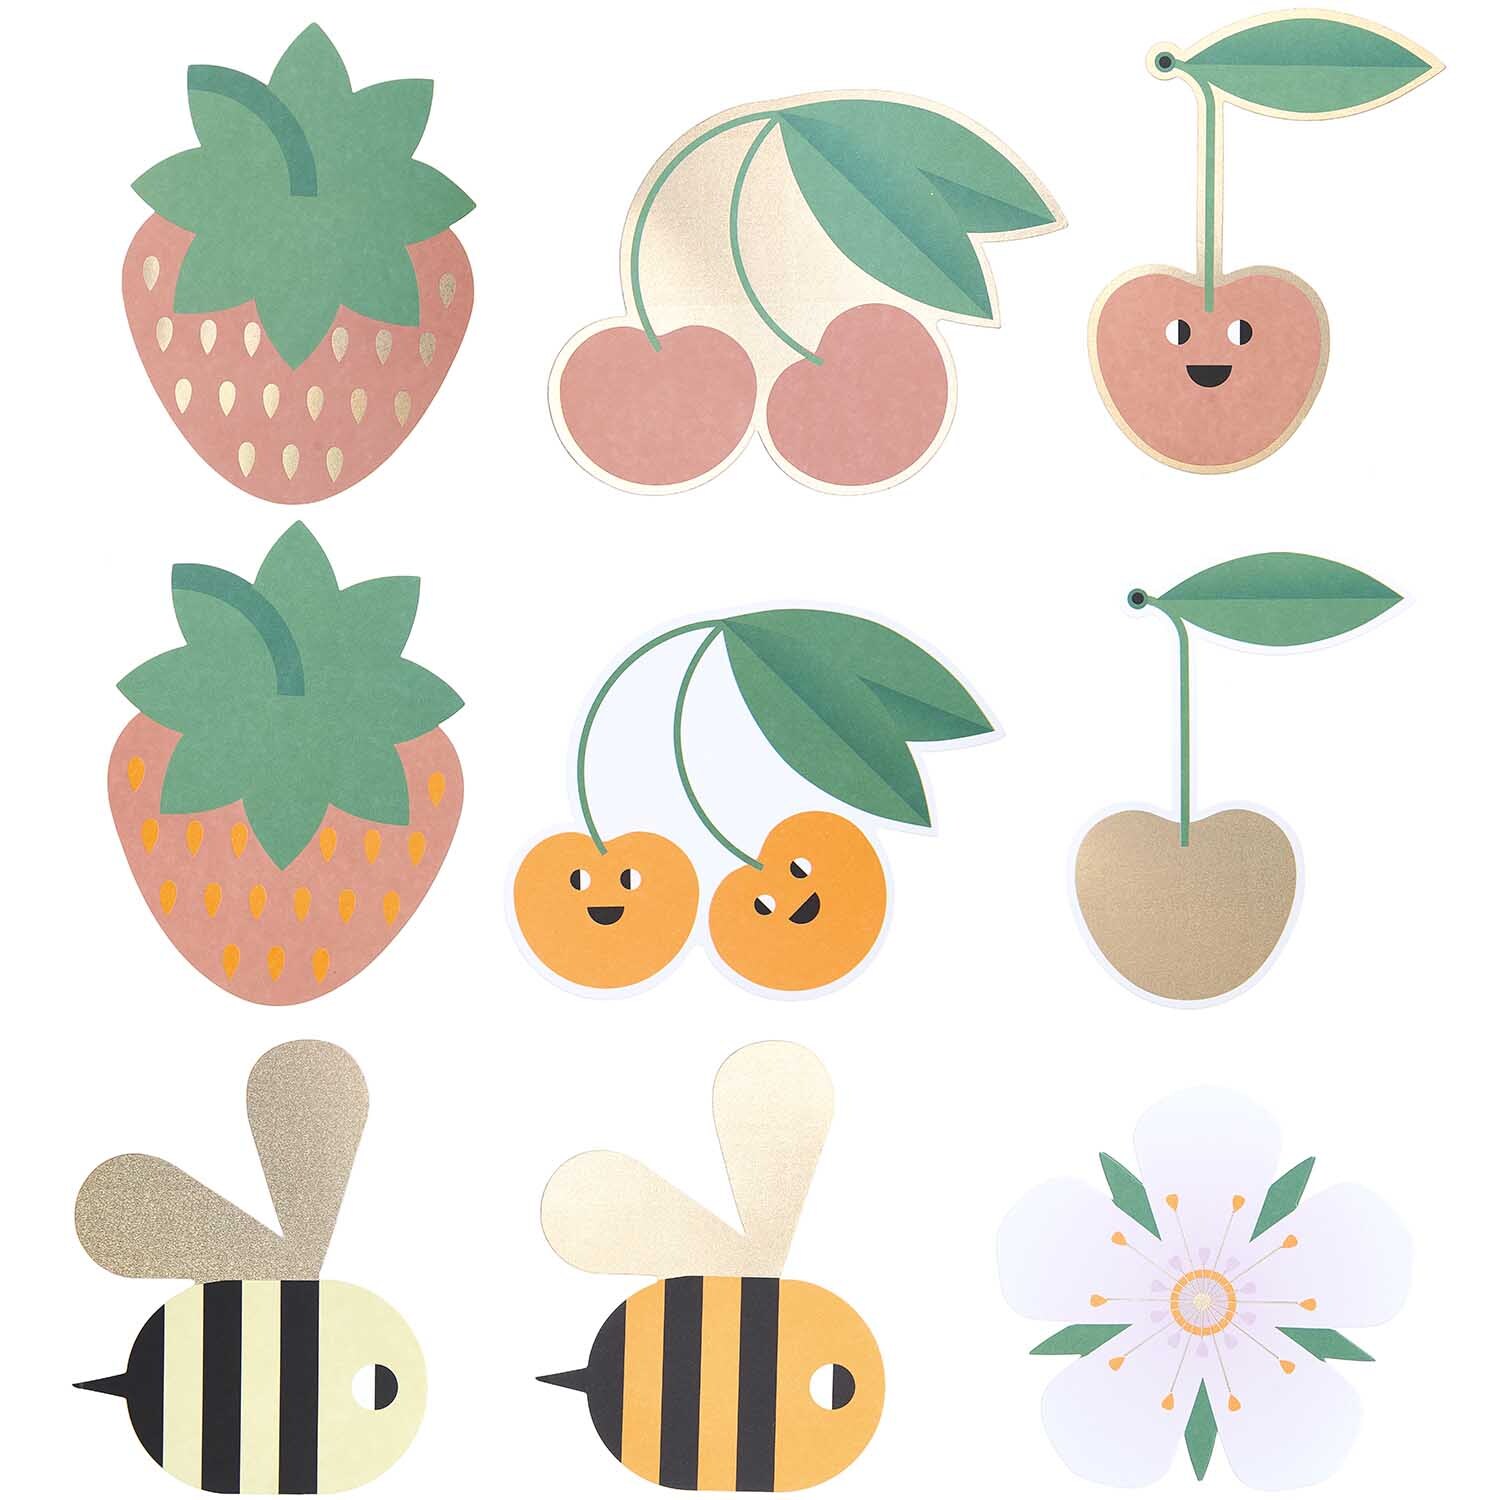 Paper Poetry Kartenset Just Bees + Fruits + Flowers 28teilig